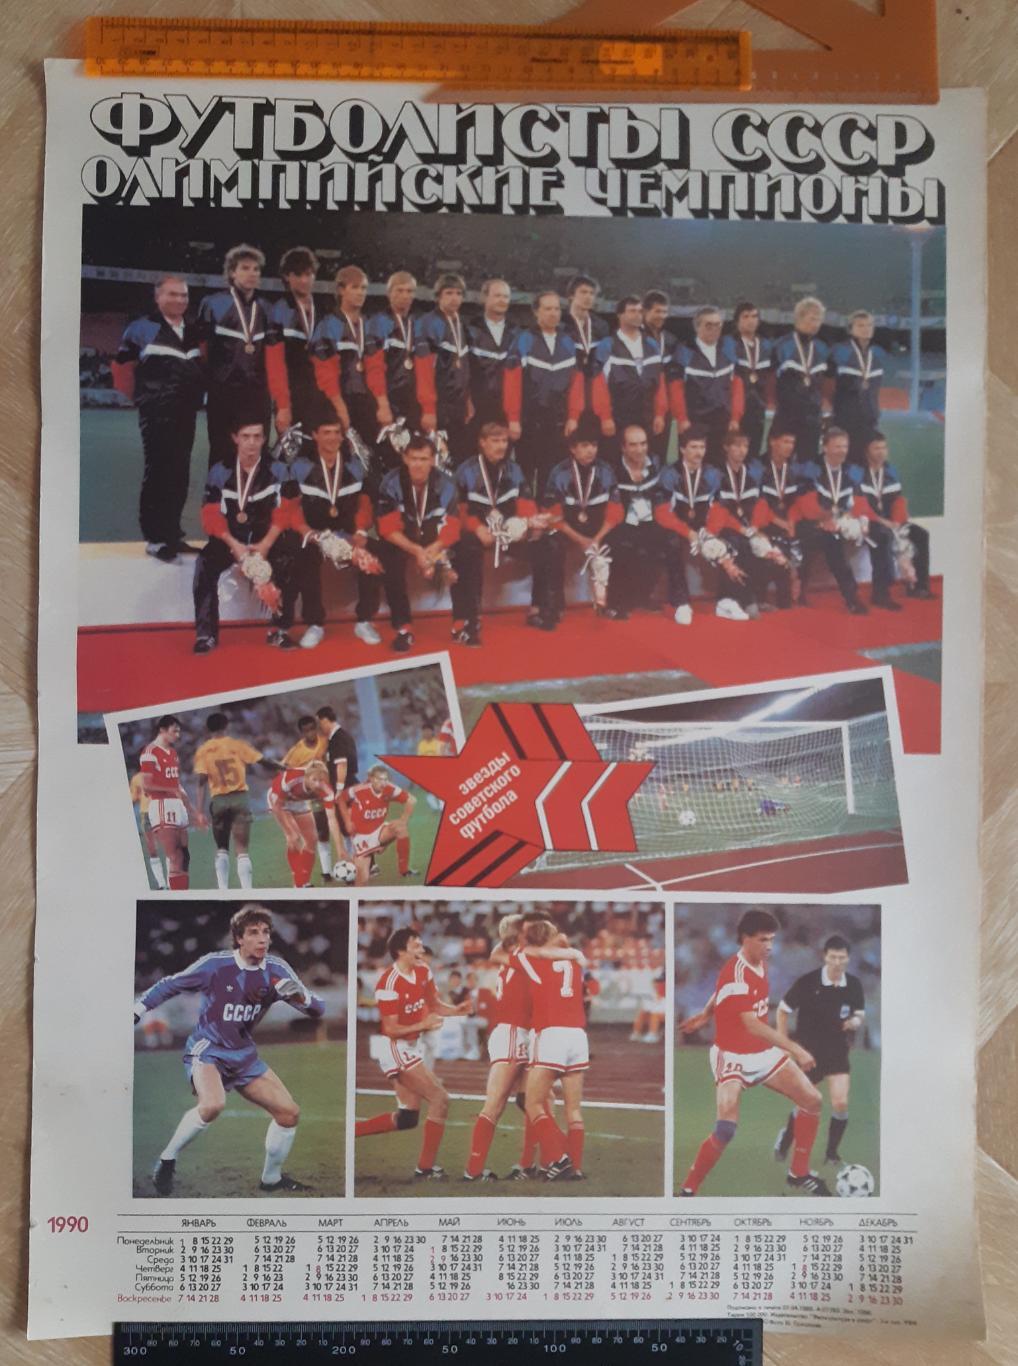 Постер сборная СССР олимпийский чемпион 1988 года.